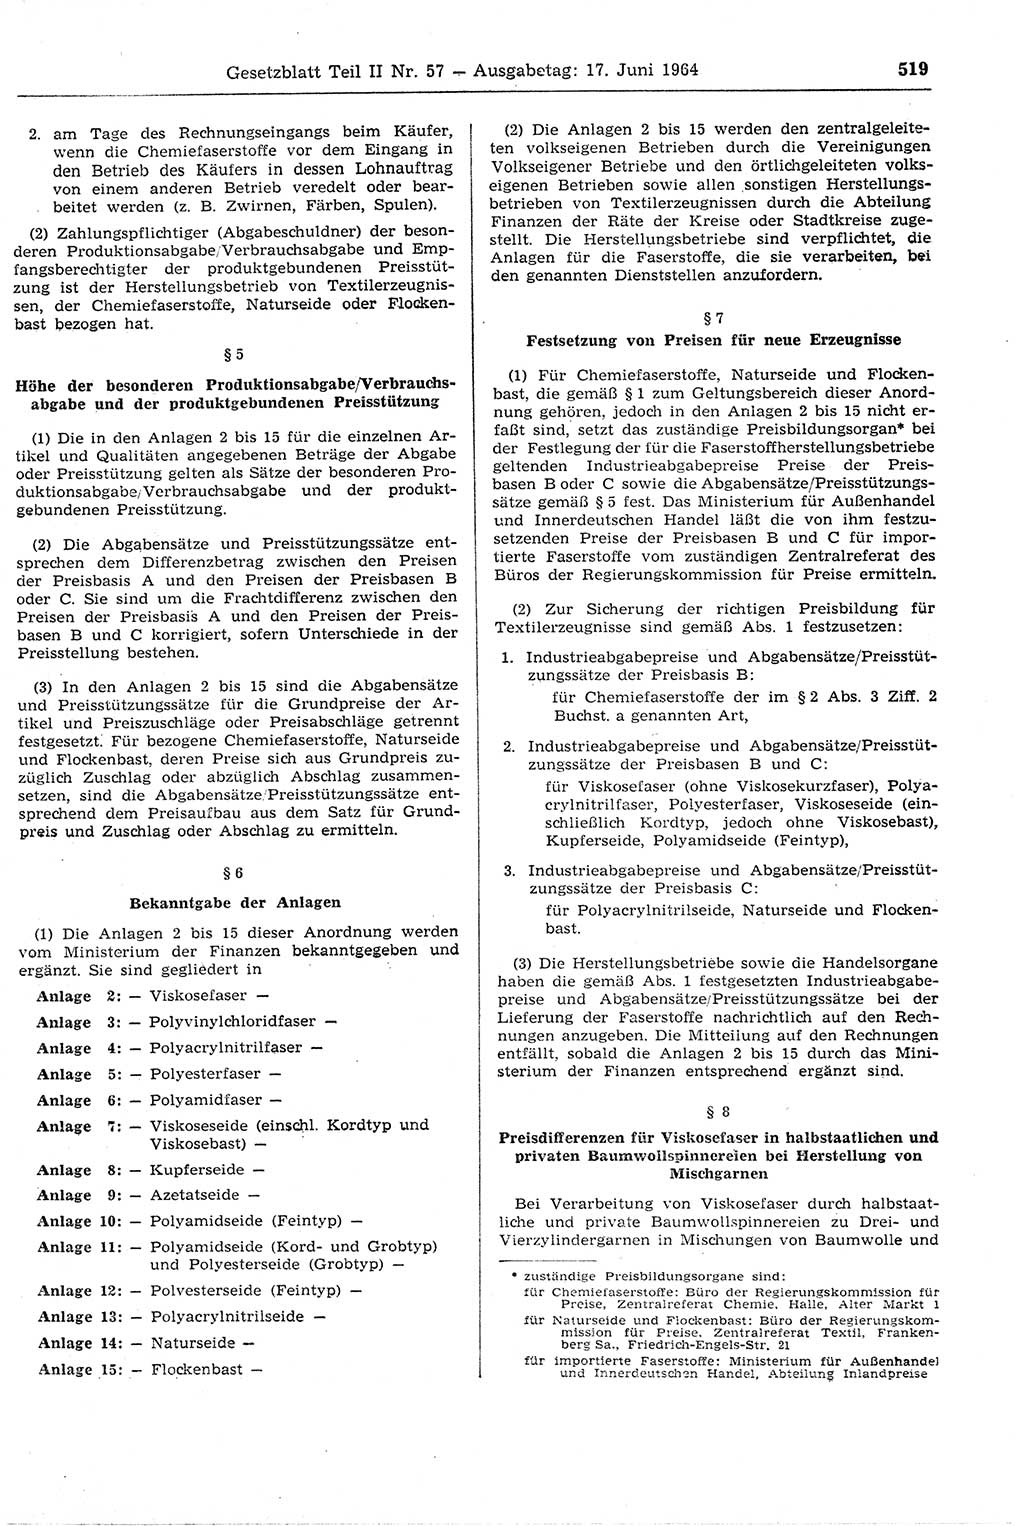 Gesetzblatt (GBl.) der Deutschen Demokratischen Republik (DDR) Teil ⅠⅠ 1964, Seite 519 (GBl. DDR ⅠⅠ 1964, S. 519)